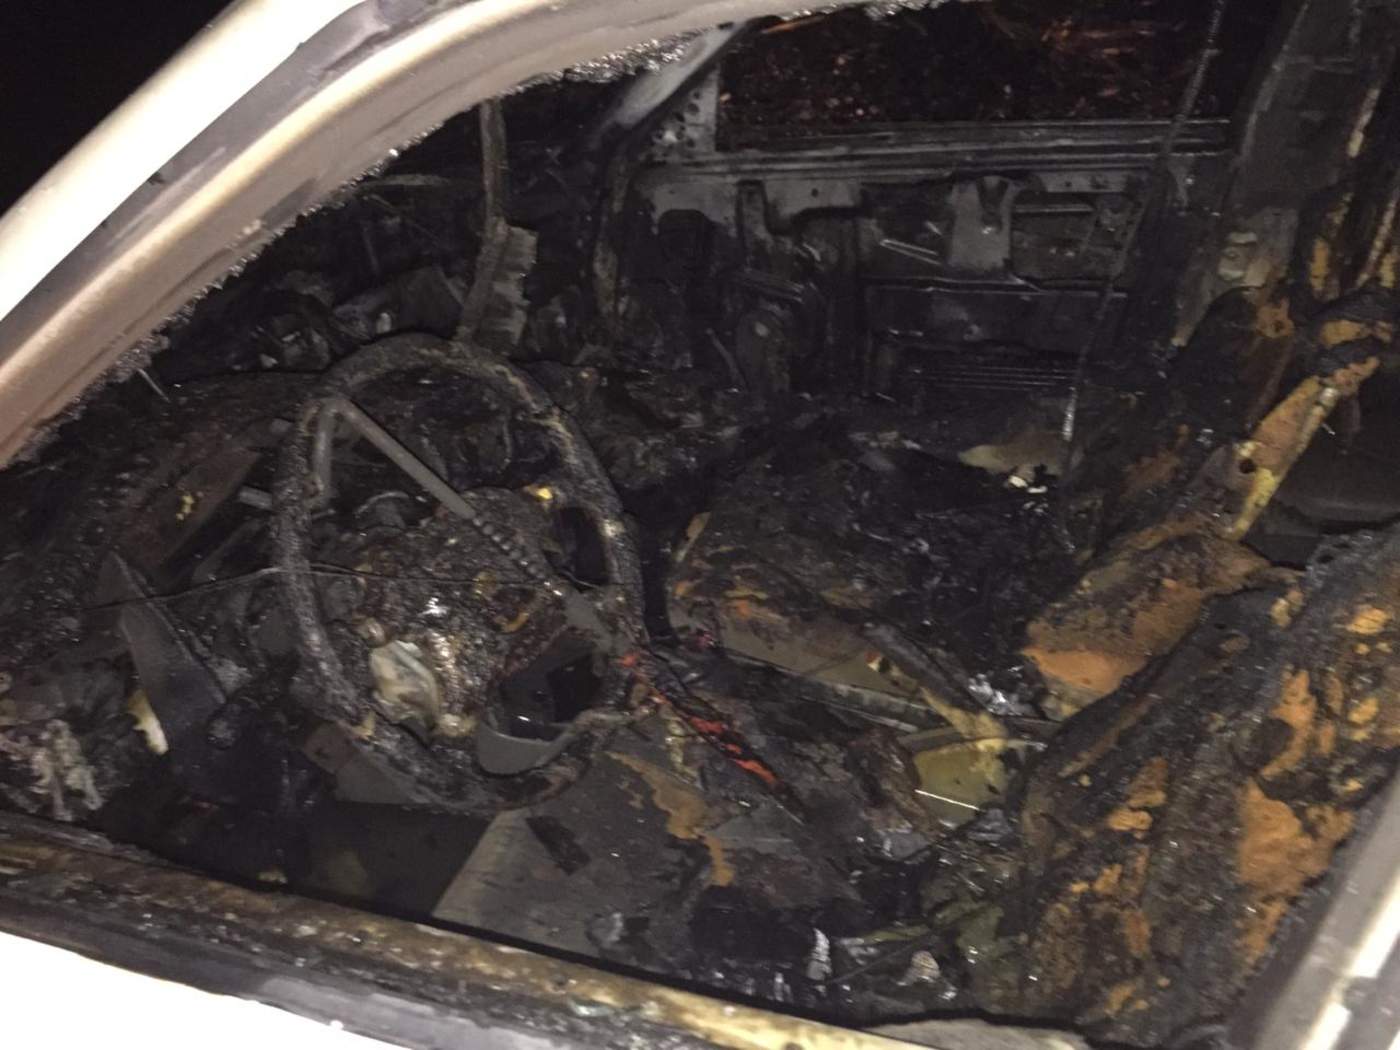 Del incendio, las autoridades no reportaron lesionados, únicamente los daños materiales del vehículo. (ESPECIAL)